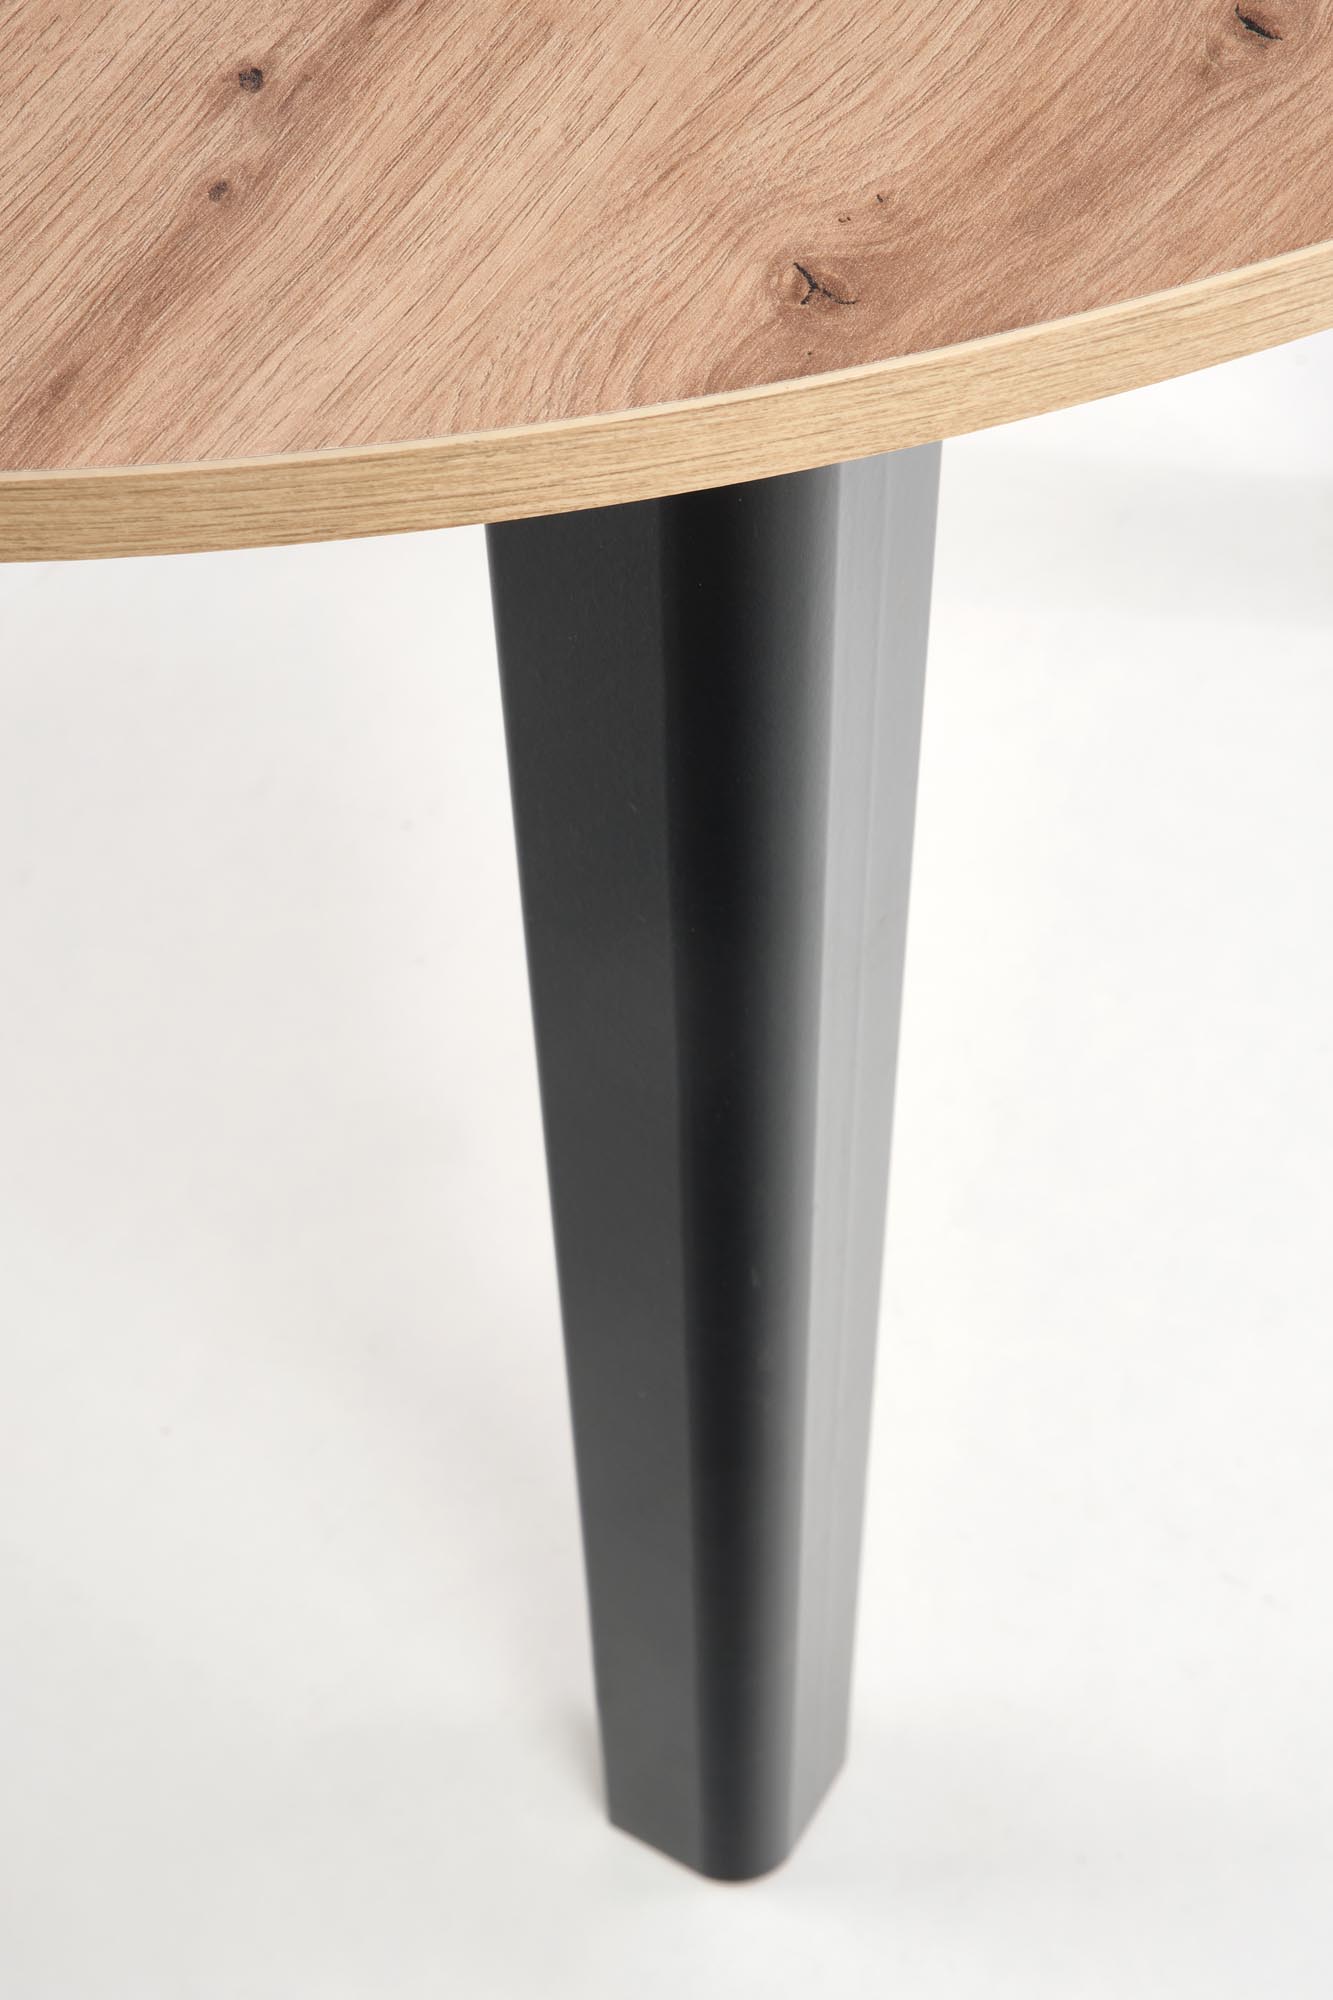 Okrúhly rozkladací stôl RINGO 102-142x102 cm - dub artisan / čierne nohy ringo Stôl Farba Pracovná doska Dub artisan, Nohy - Čierny 